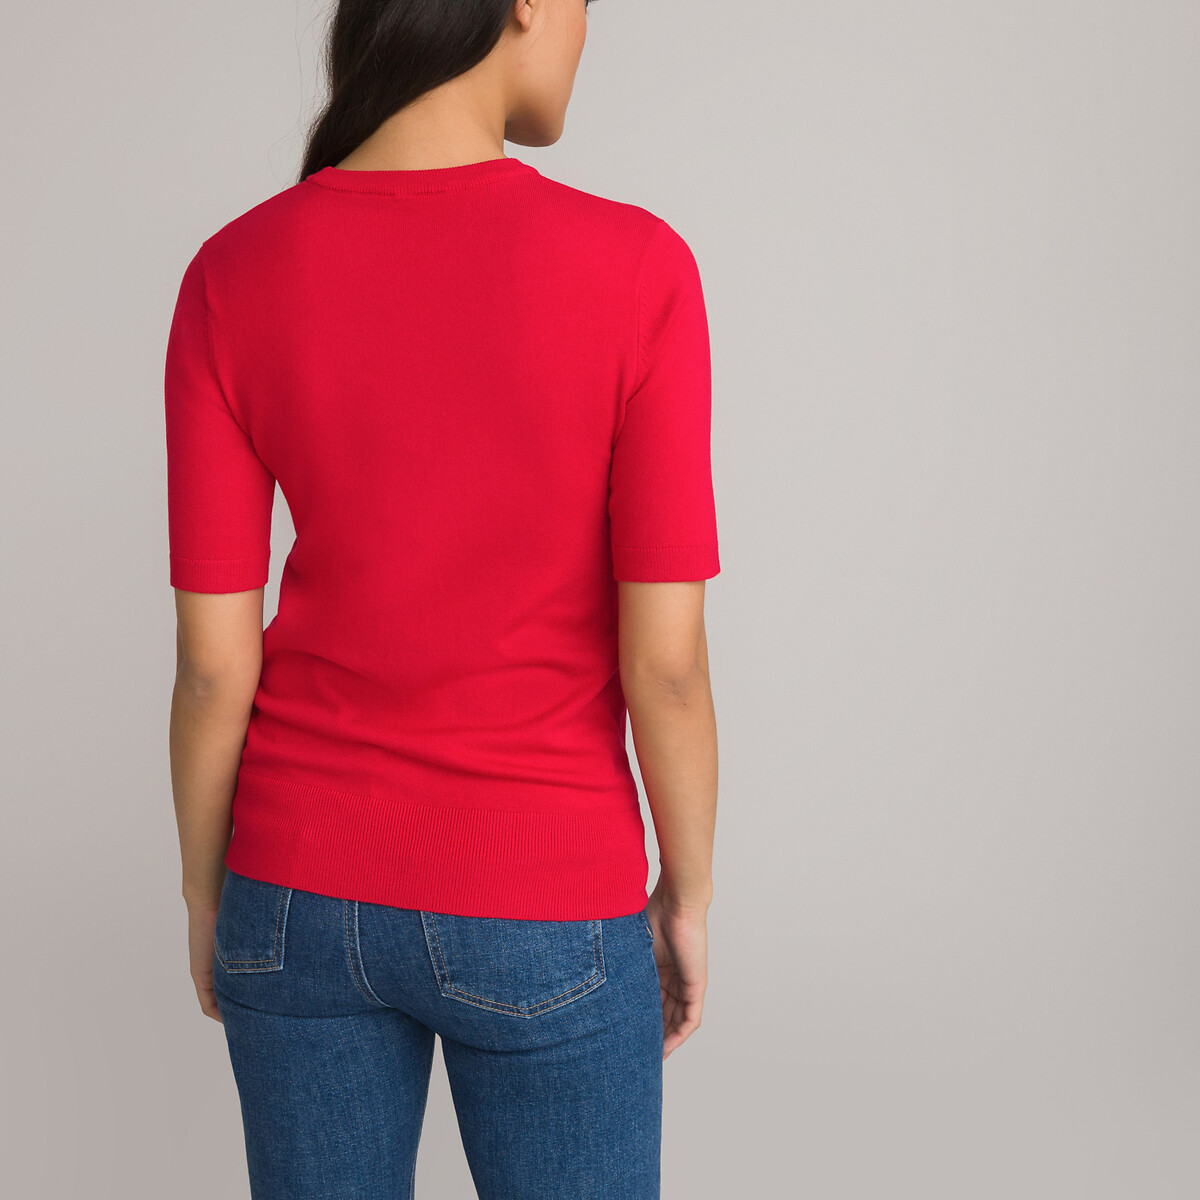 Пуловер Базовый с короткими рукавами S красный LaRedoute, размер S - фото 4